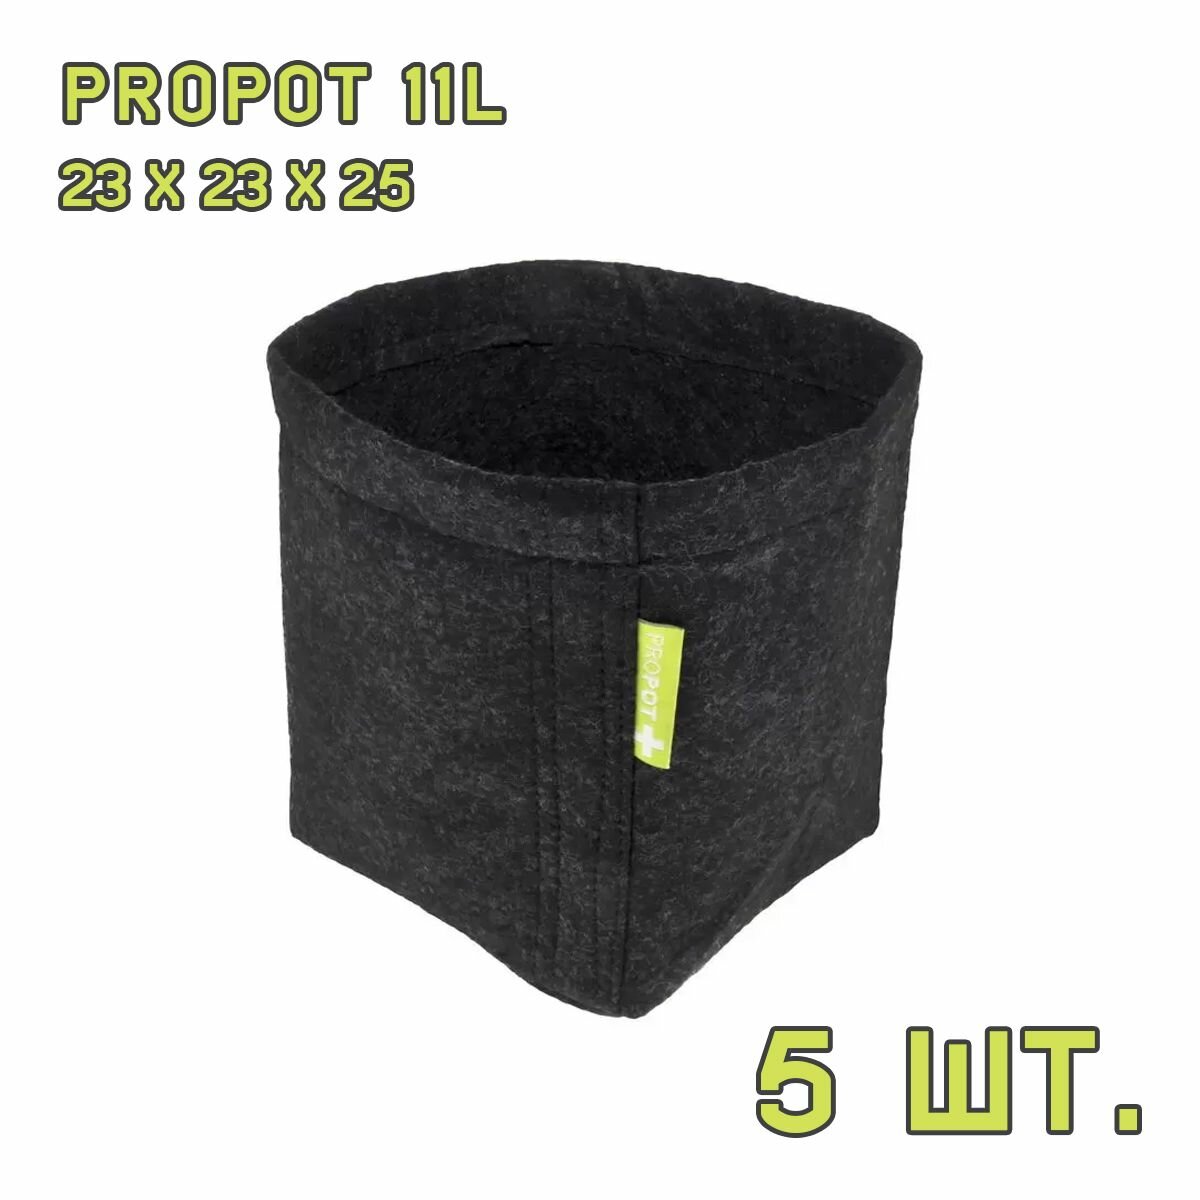 Текстильный горшок PROPOT 11L 5 шт.